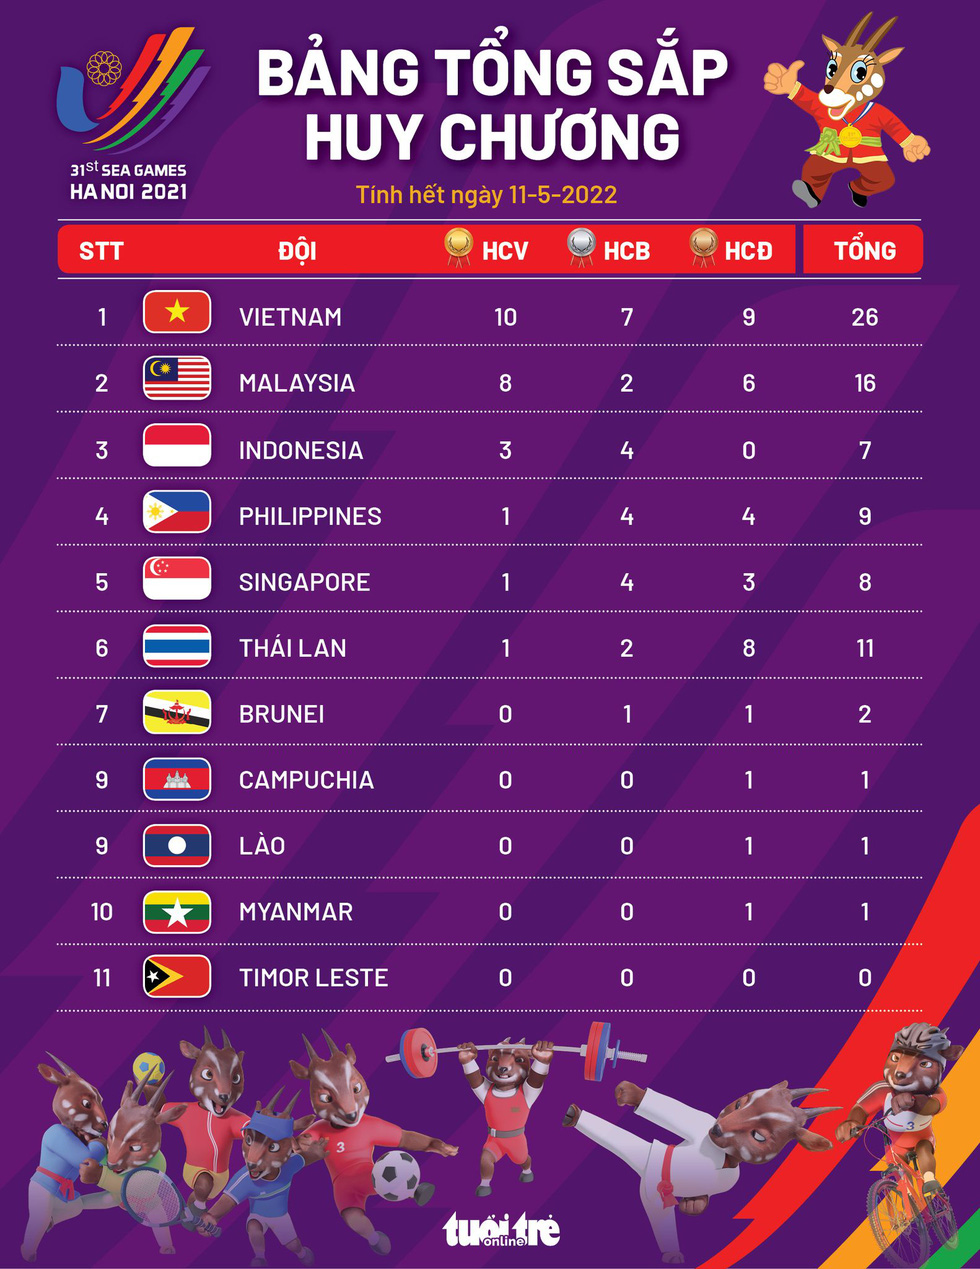 Bảng tổng sắp huy chương SEA Games 31: Việt Nam vươn lên dẫn đầu, Malaysia bám sát - Ảnh 1.